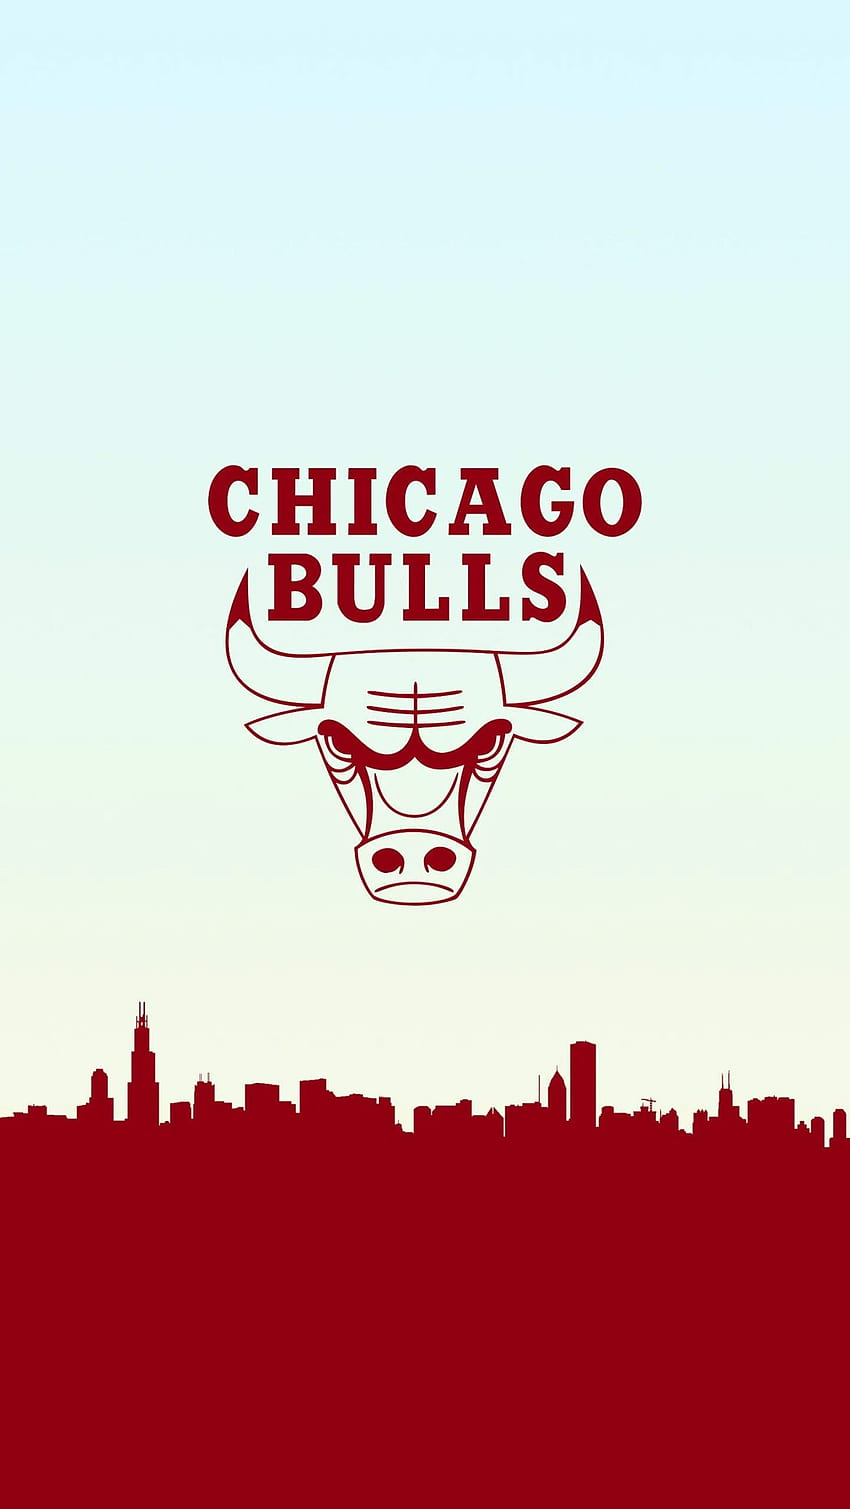 Chicago Bulls Wallpaper - iXpap